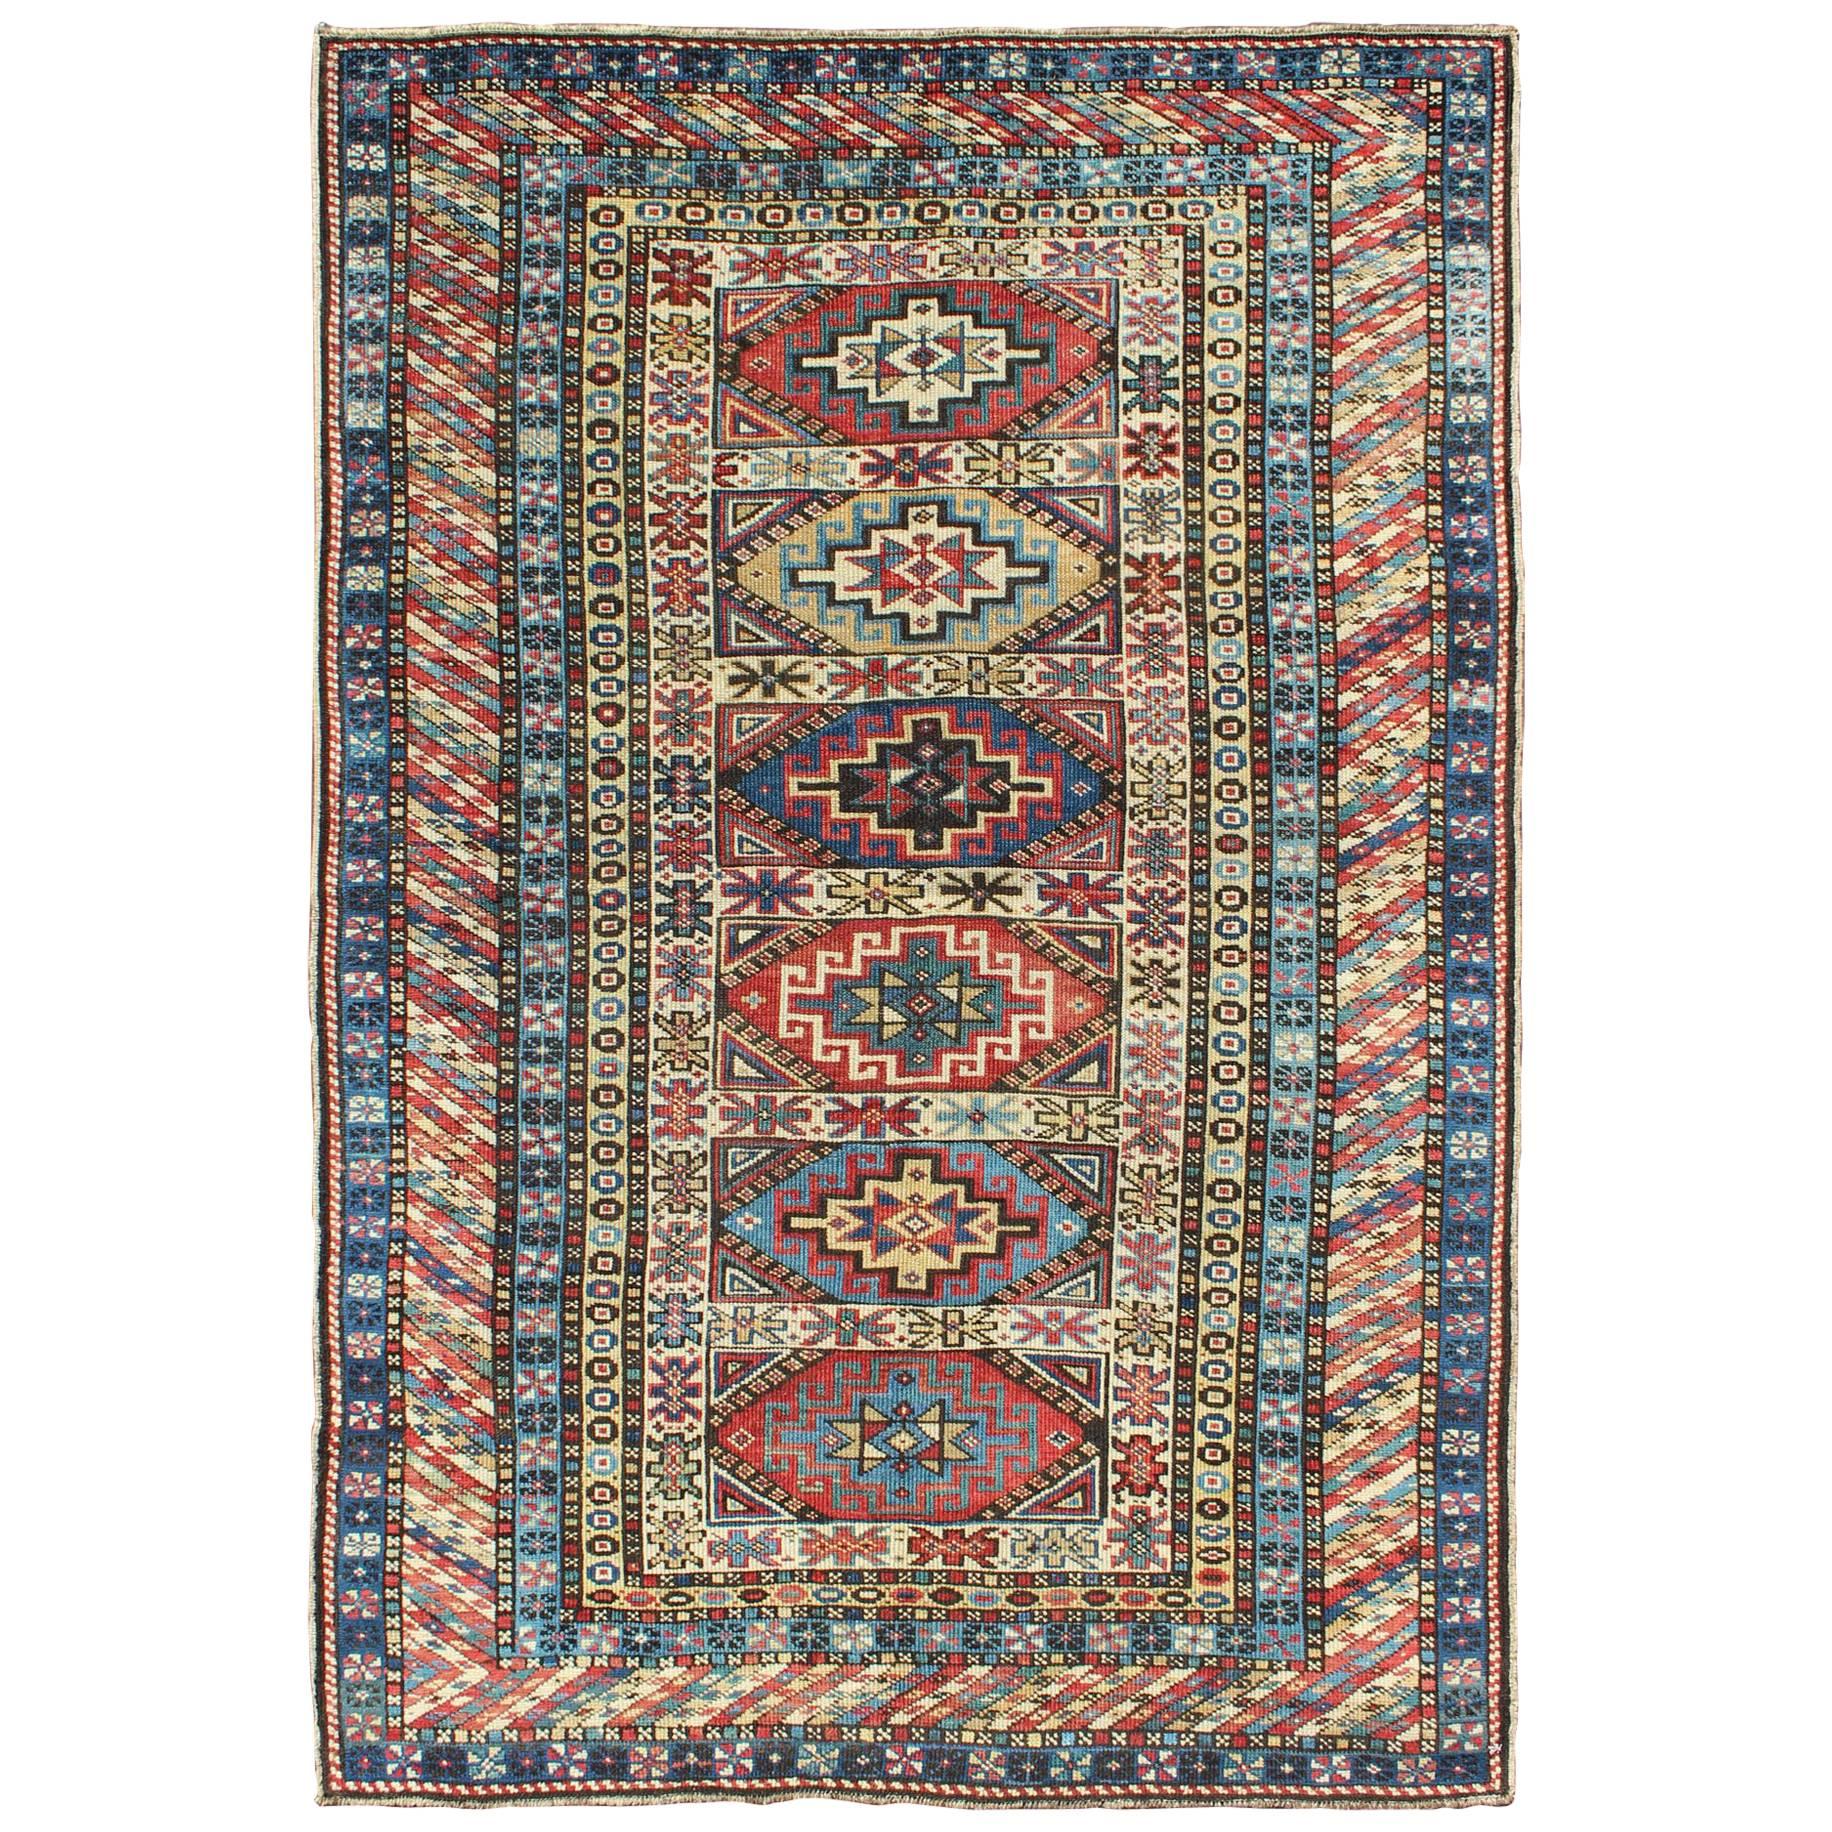 Antiker kaukasischer Teppich mit sechs zentralen Medaillons und aufwändigen geometrischen Bordüren